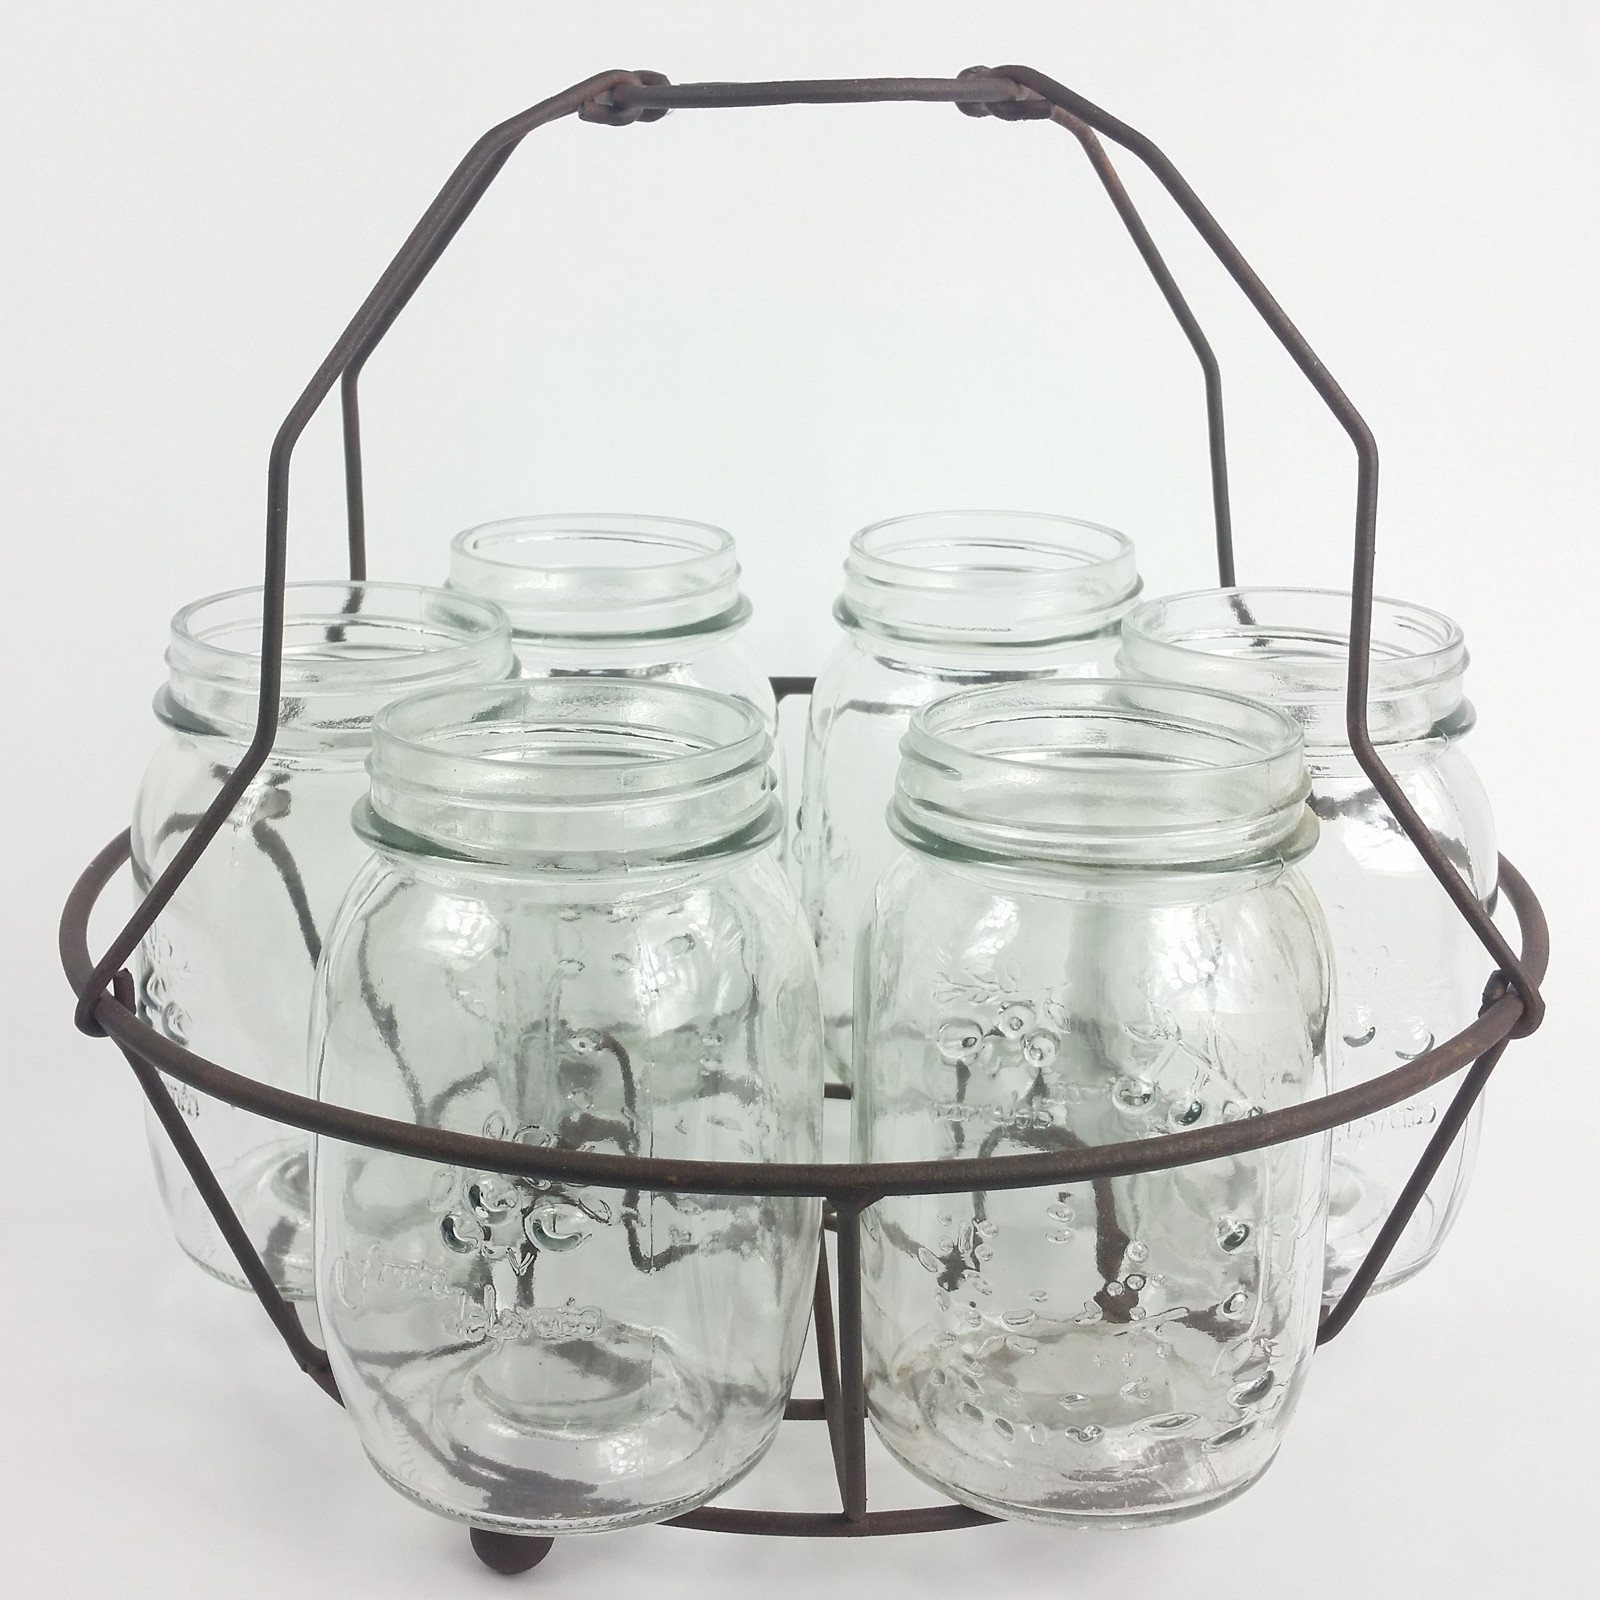 Kalalou - Glass Jar with Metal Lid